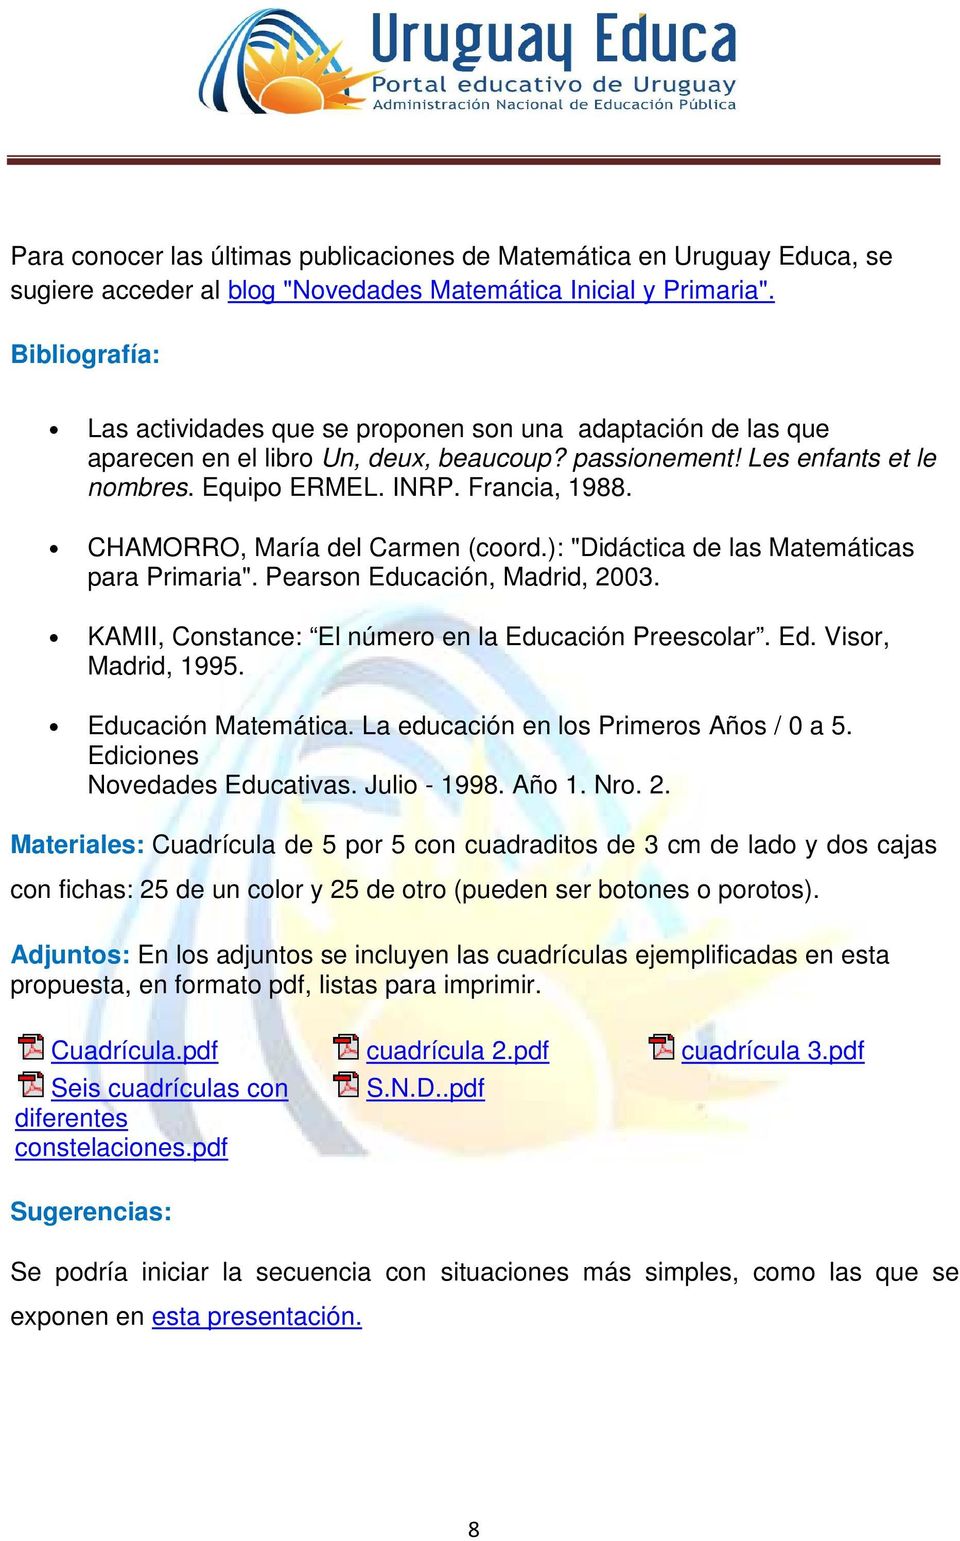 CHAMORRO, María del Carmen (coord.): "Didáctica de las Matemáticas para Primaria". Pearson Educación, Madrid, 2003. KAMII, Constance: El número en la Educación Preescolar. Ed. Visor, Madrid, 1995.